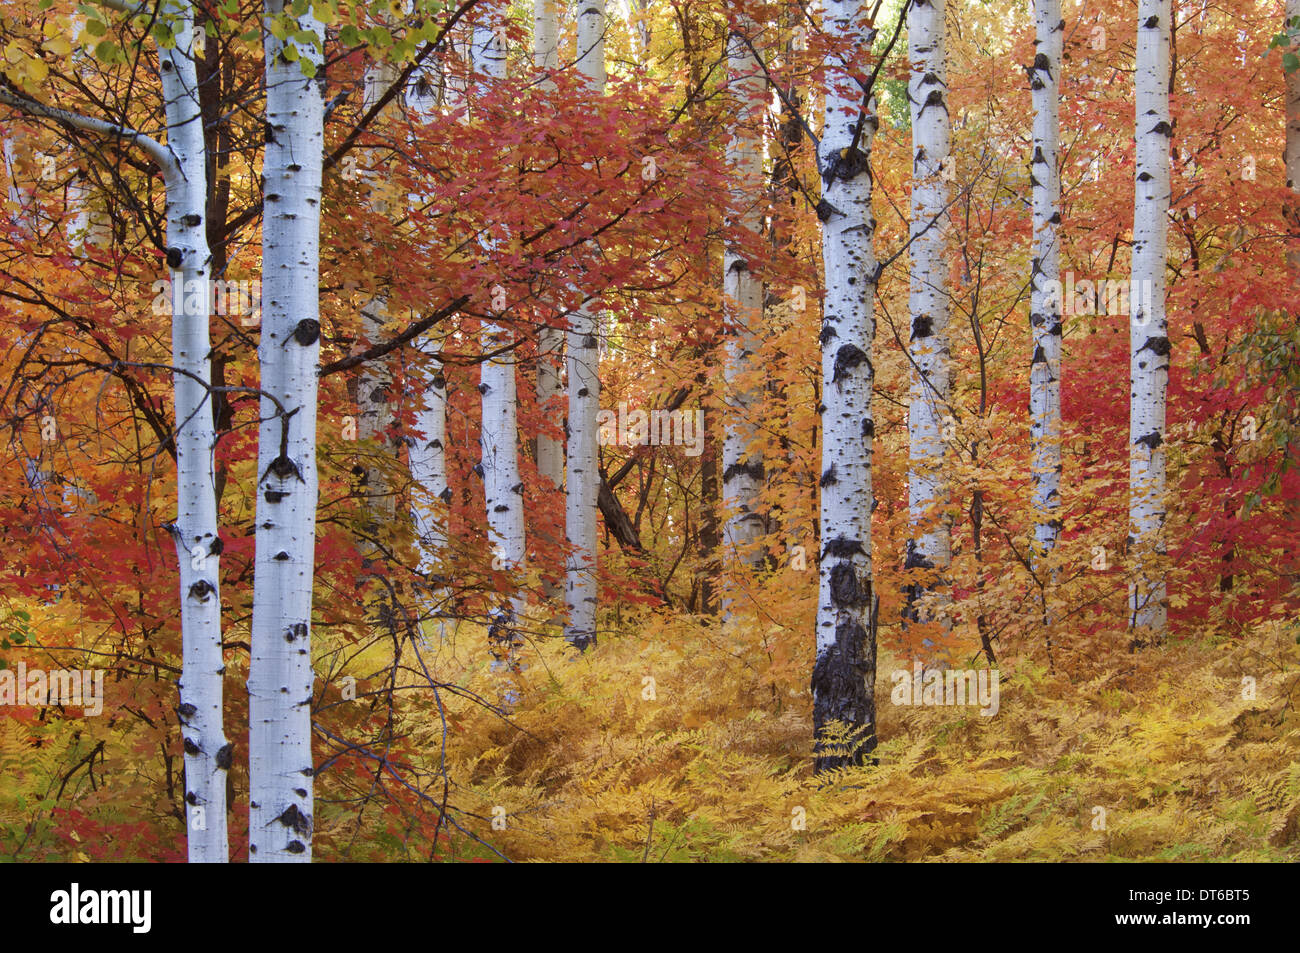 Wald von den Rocky Mountain Ahorn und Beben Aspen Baum in den Wasatch Mountains. Herbstsaison. Stockfoto